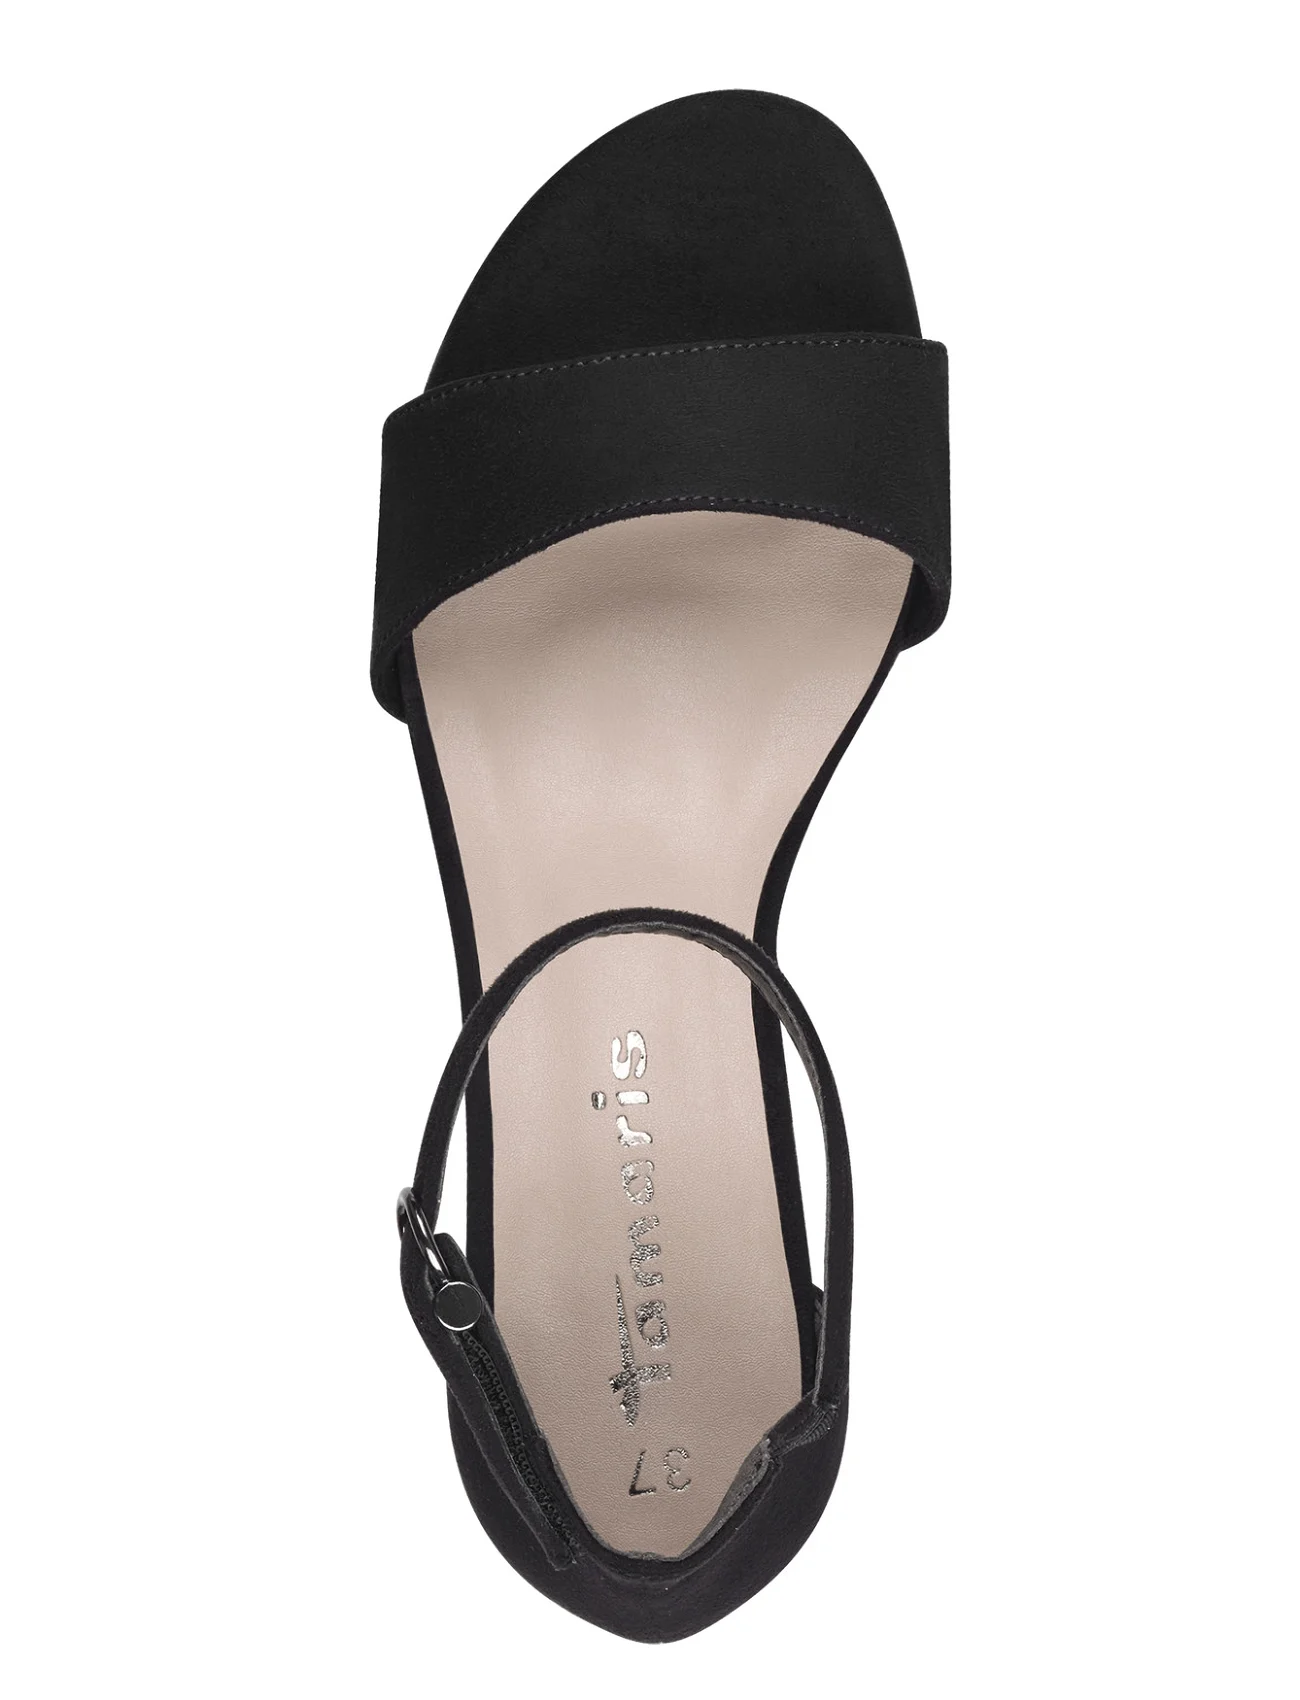 Tamaris - Women Sandals - odzież imprezowa w cenach outletowych - black - 1